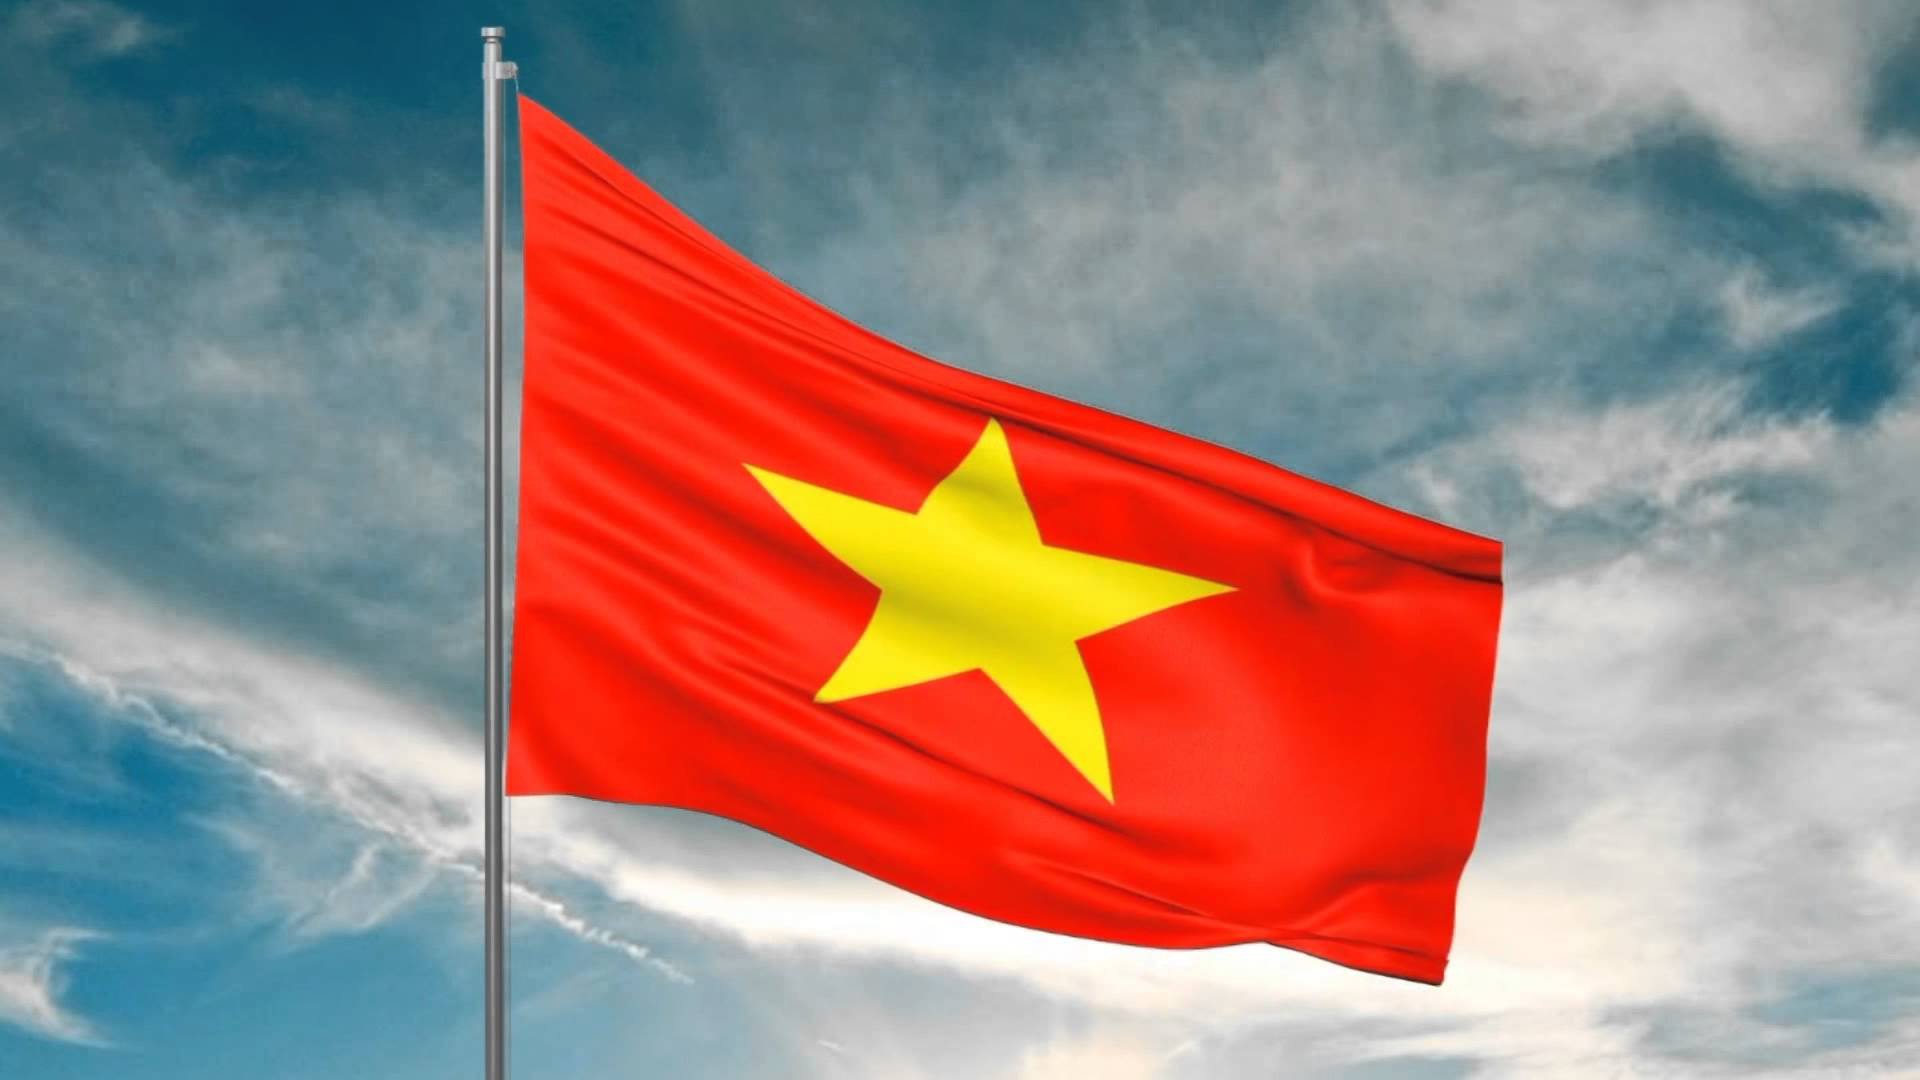 Cùng tự hào và vinh dự chiêm ngưỡng lá cờ Tổ quốc đầy truyền thống và ý nghĩa. Đây là biểu tượng vĩnh cửu của sức mạnh và độc lập của đất nước chúng ta. Hãy cảm nhận sức sống trong lá cờ Tổ quốc và tự hào là một công dân Việt Nam.